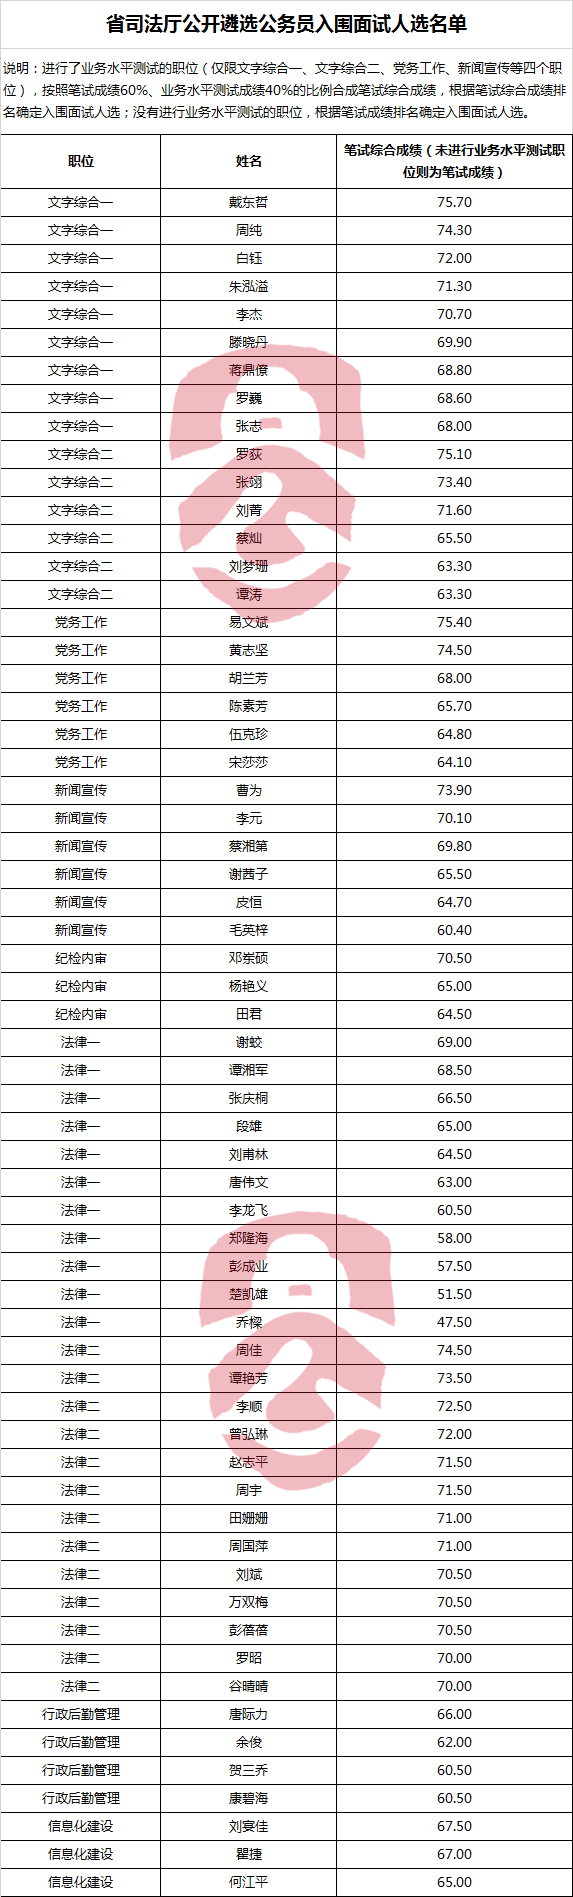 湖南省司法厅公开遴选公务员入围面试人选名单.png